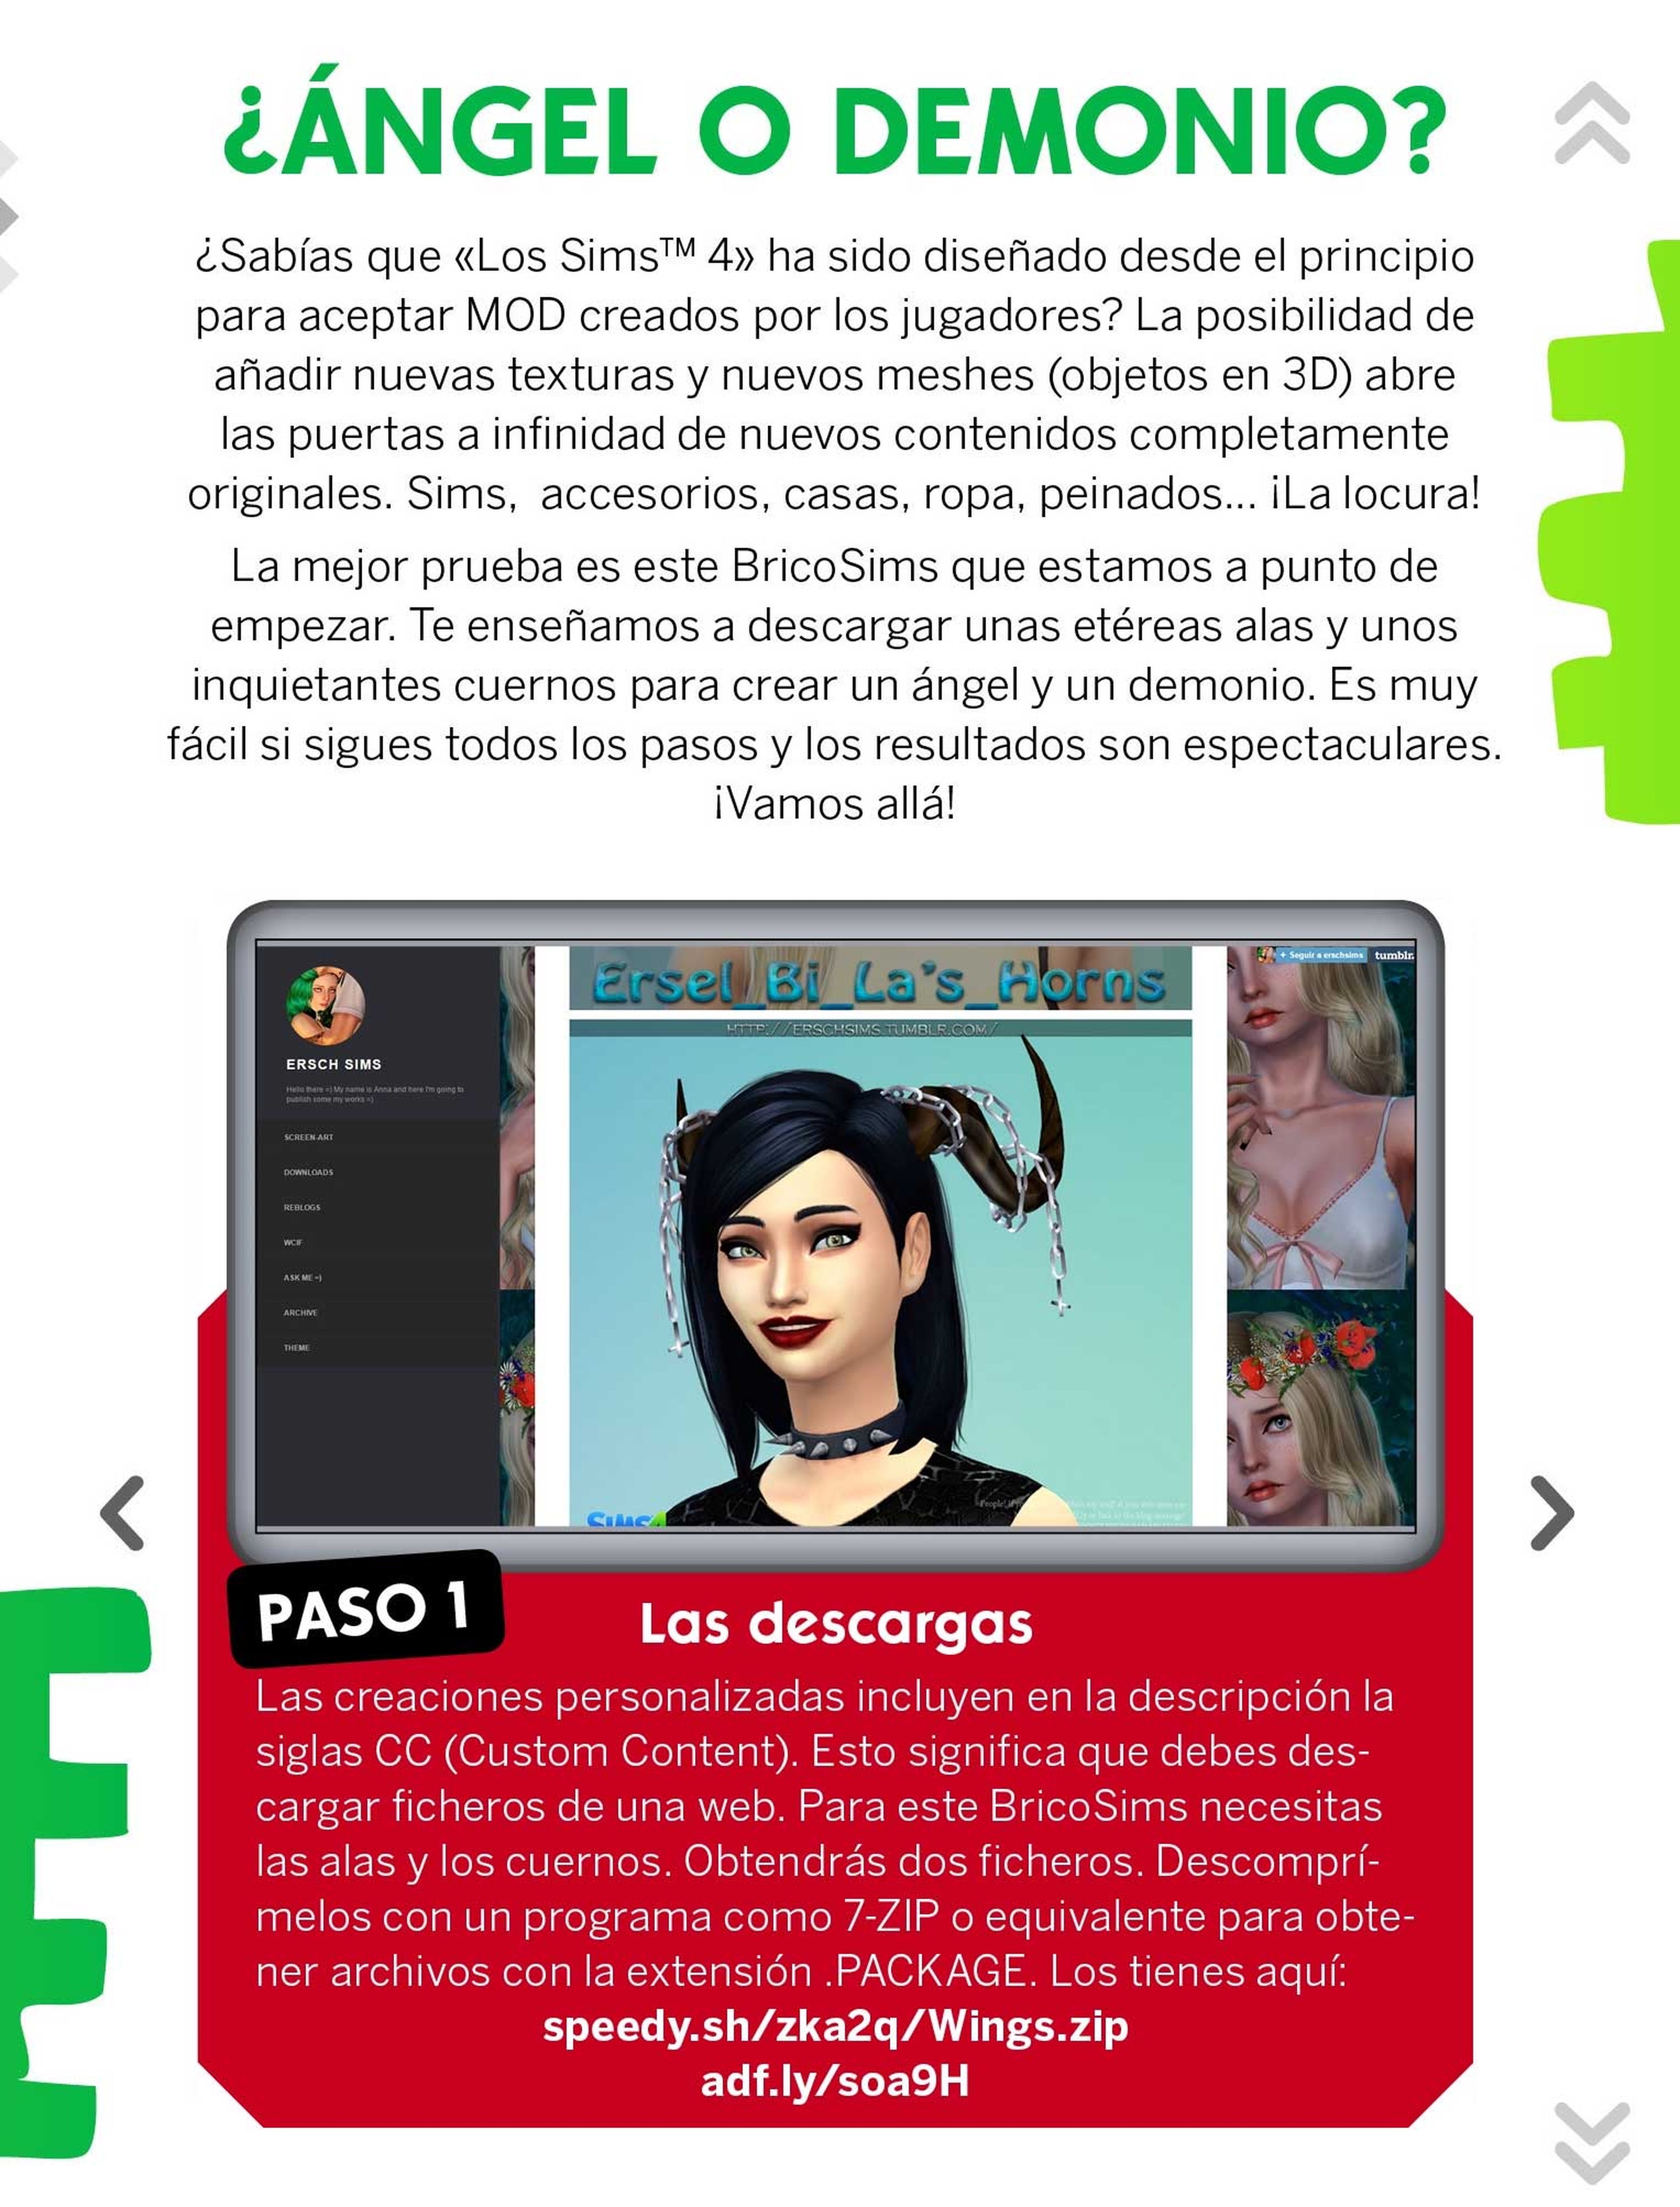 ¡Ya puedes descargar gratis el número 7 de La Revista Oficial de Los Sims!